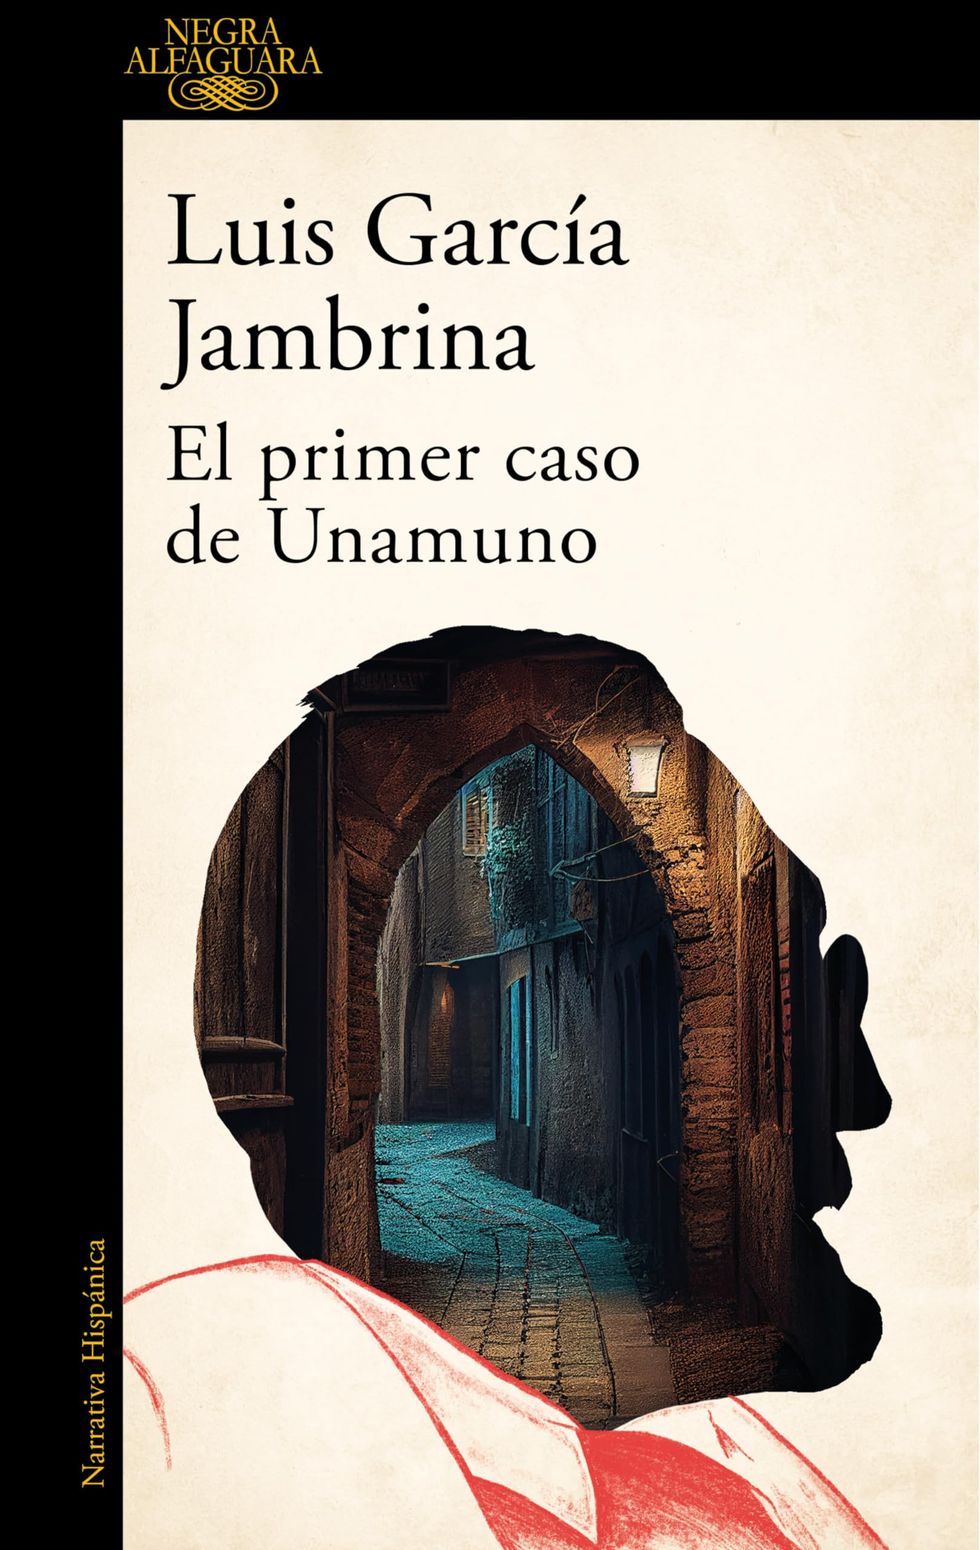 'El primer caso de Unamuno' de Luis García Jambrina [11 de enero]